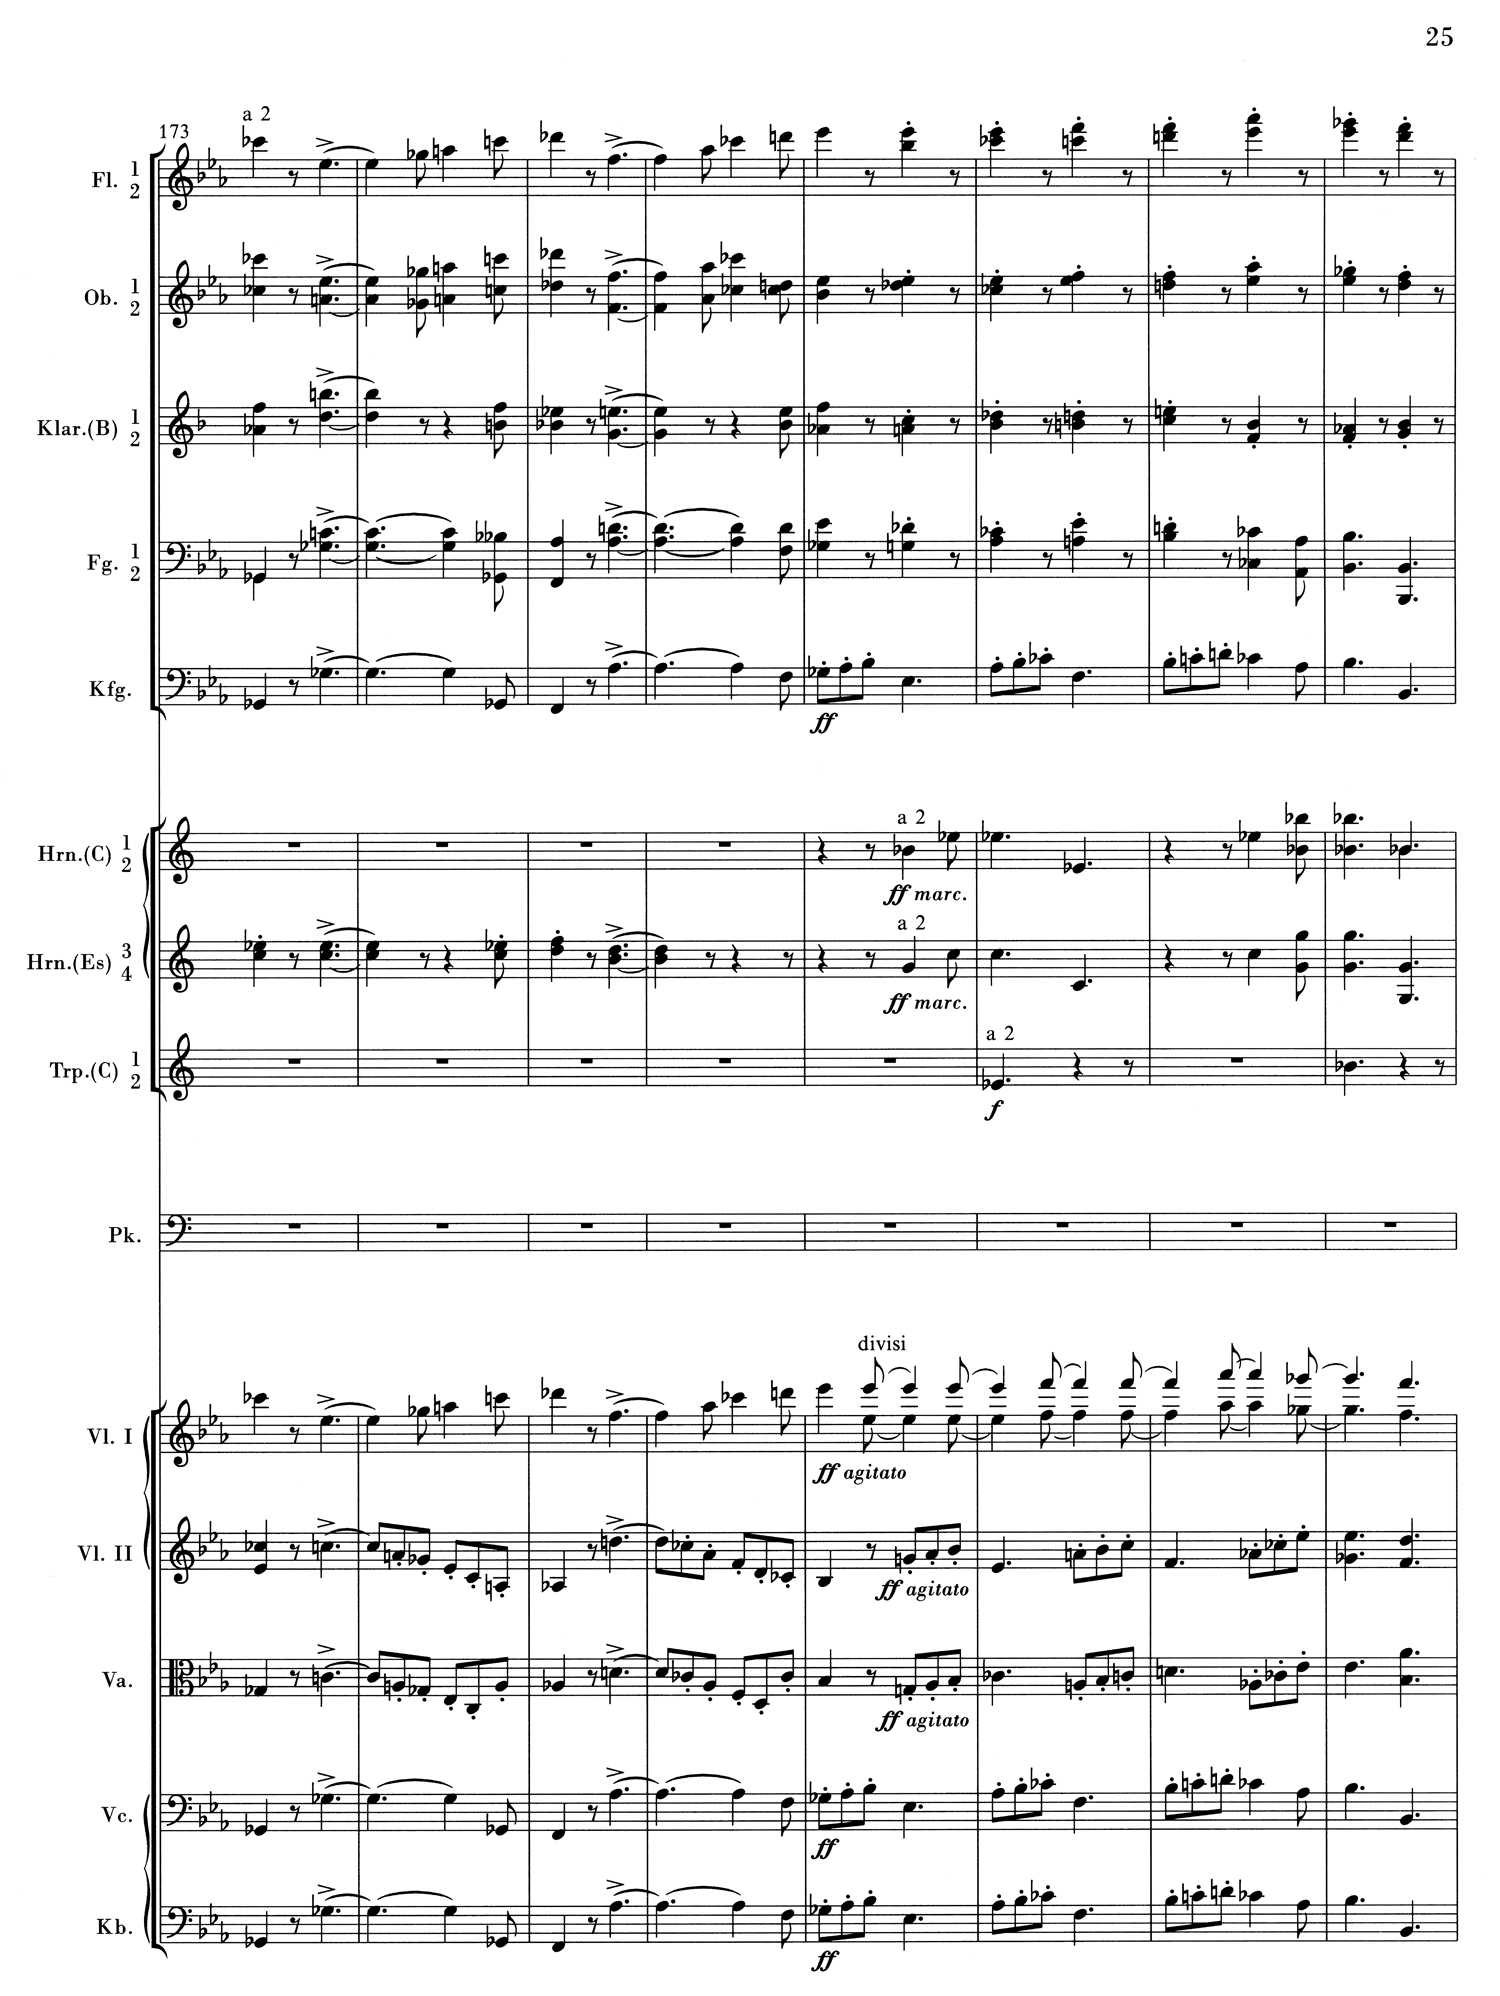 Brahms 1 Mvt 1 Score 3.jpg